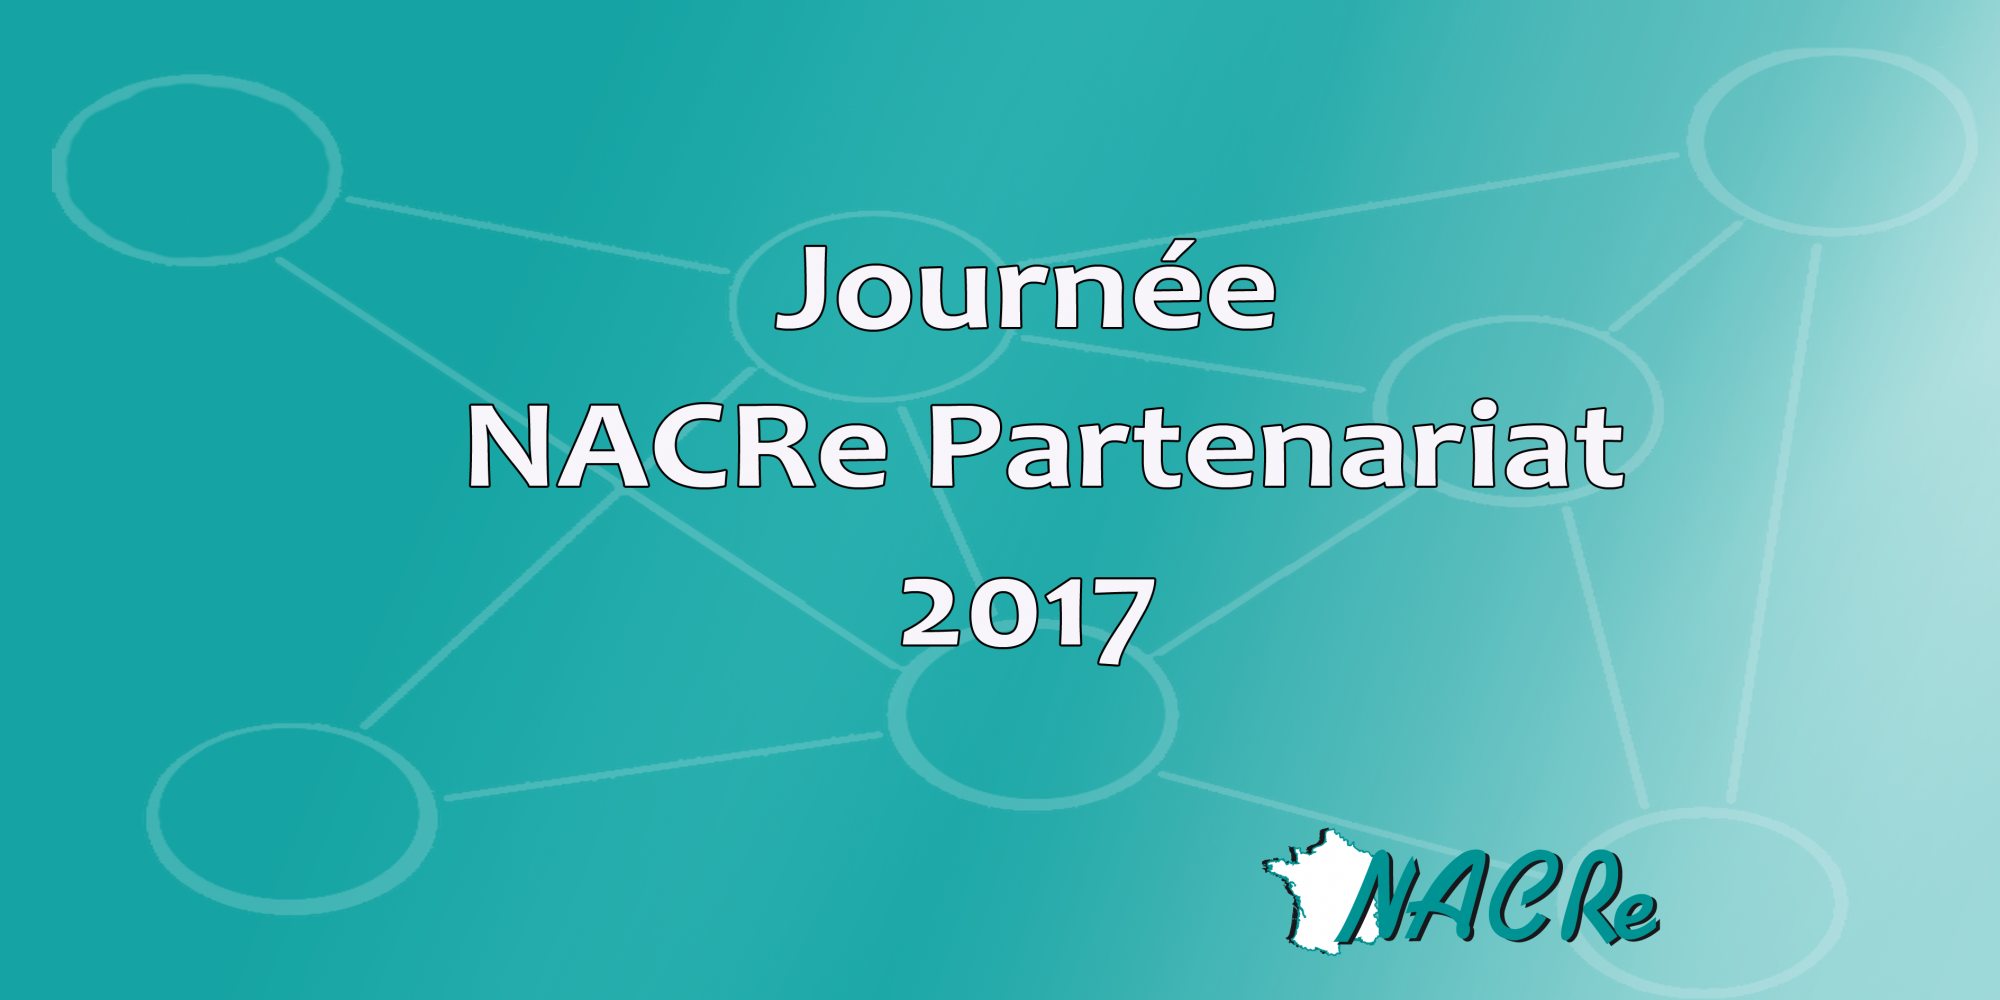 Journée NACRe/Partenariat 2017 [17/03/17]